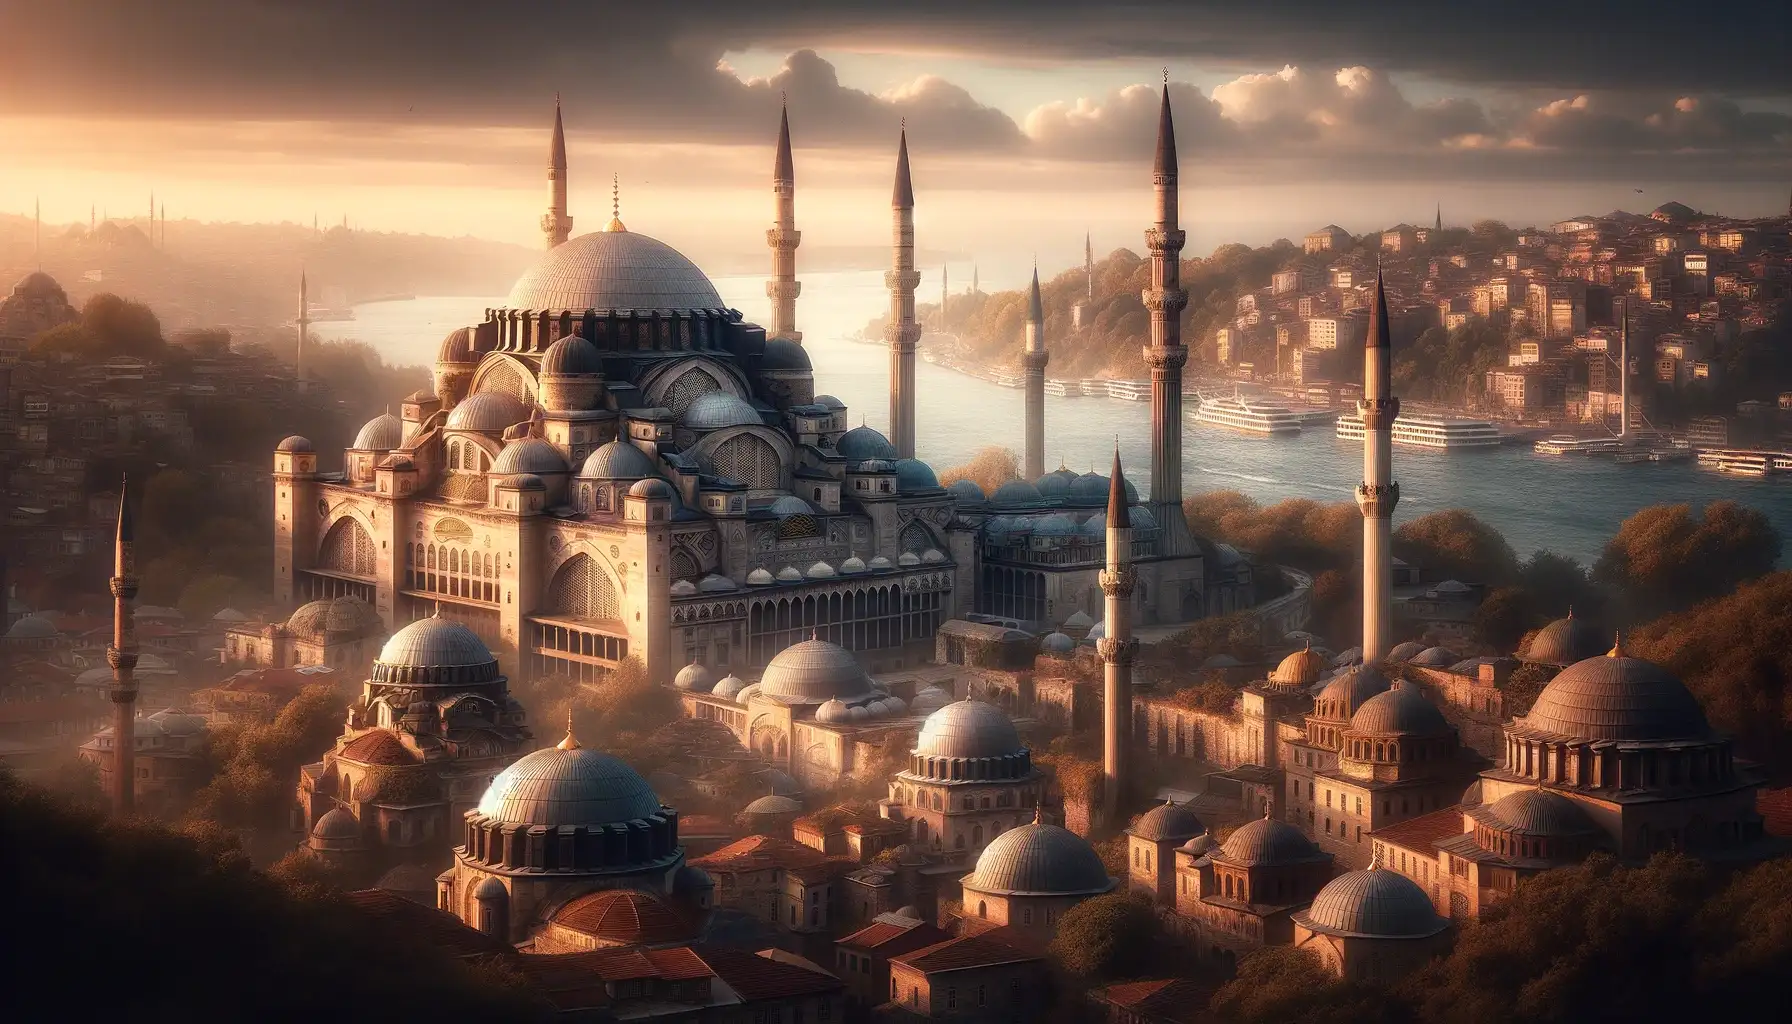 Zamanı Aşan Usta: Mimar Sinan ve Mimari Mirası